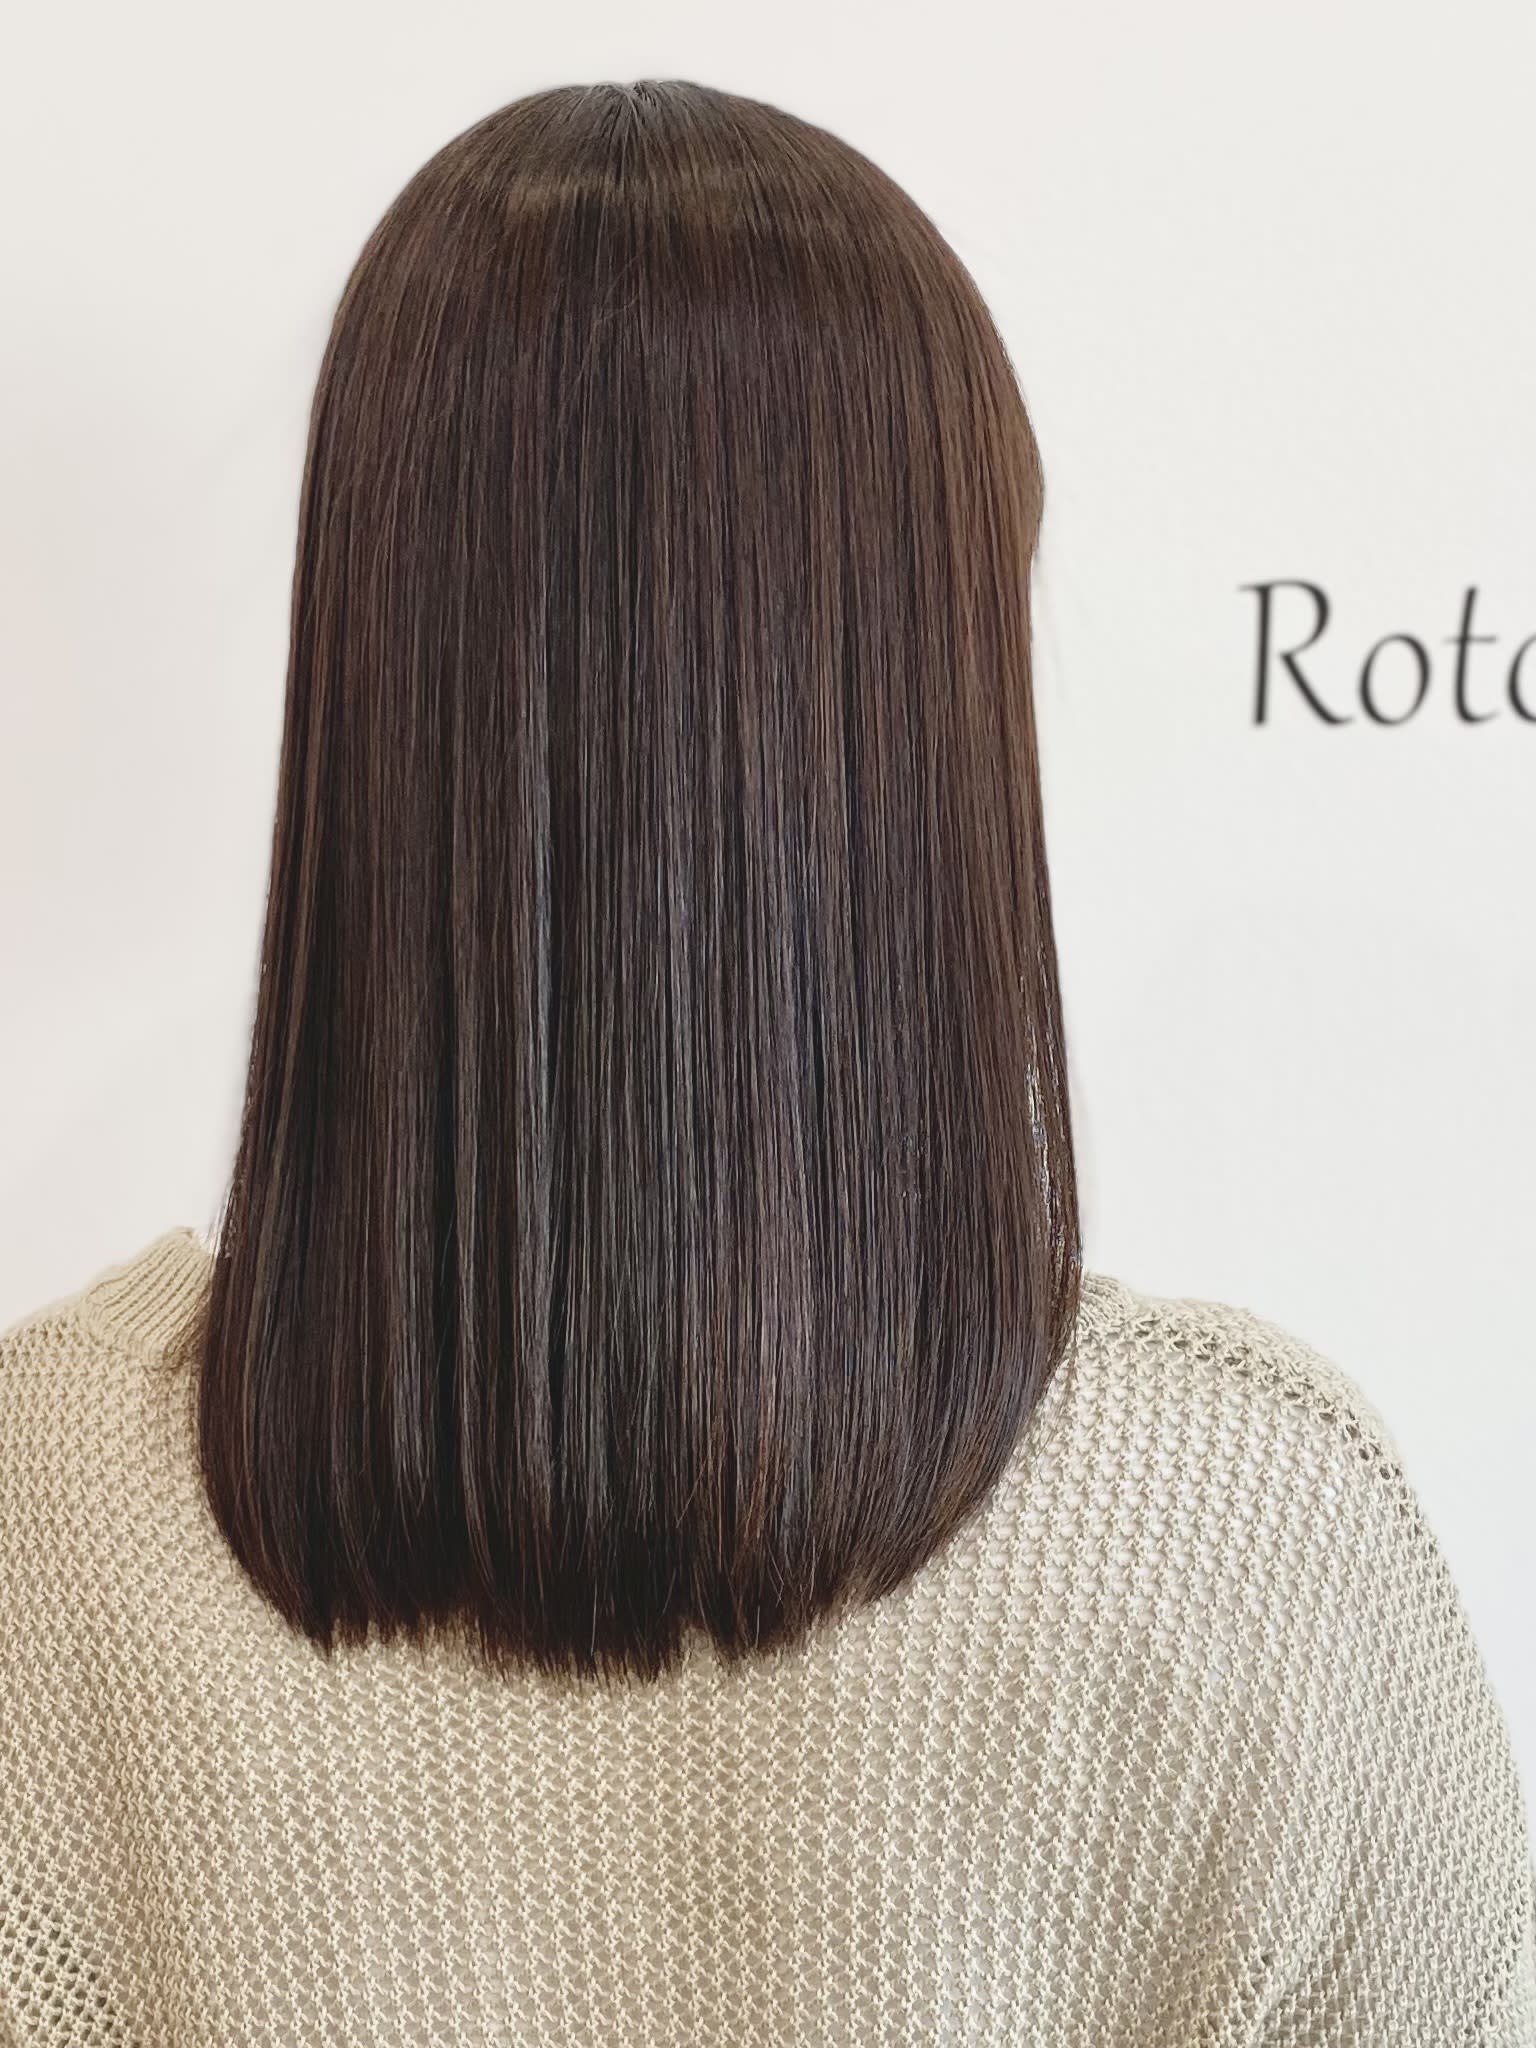 Roto hair【ロトヘアー】【ロトヘアー】のスタイル紹介。Roto hair×ロング×架橋式髪質改善